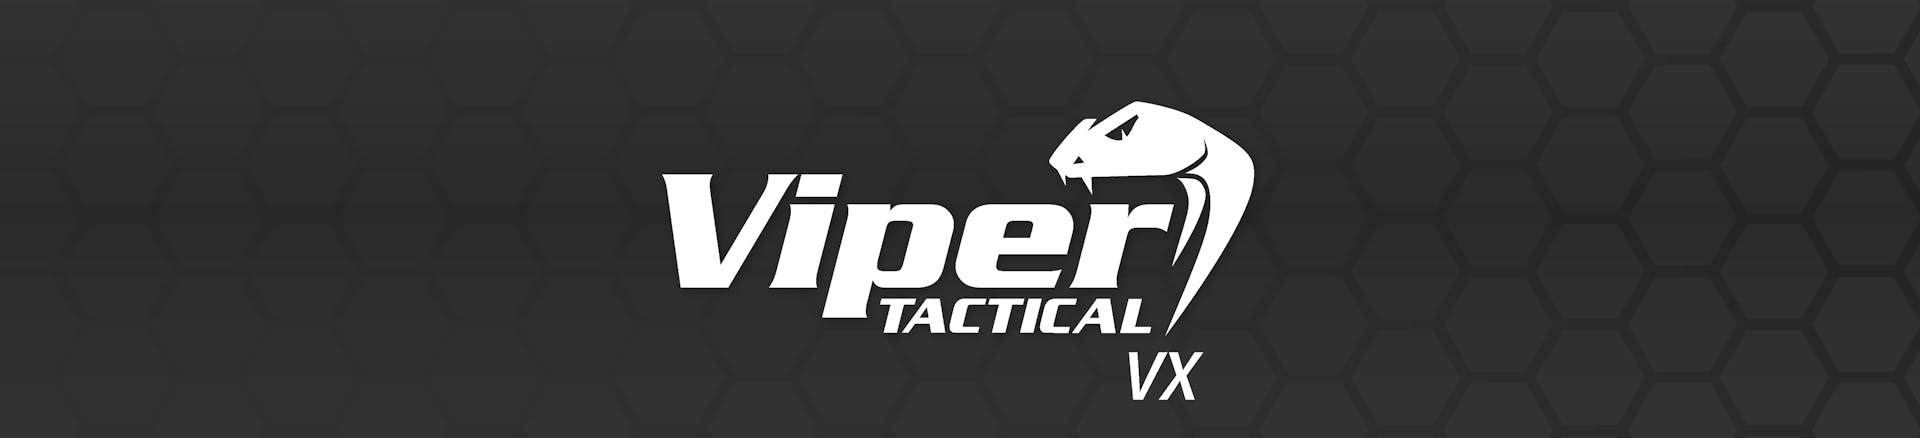 Viper Tactical VX Range